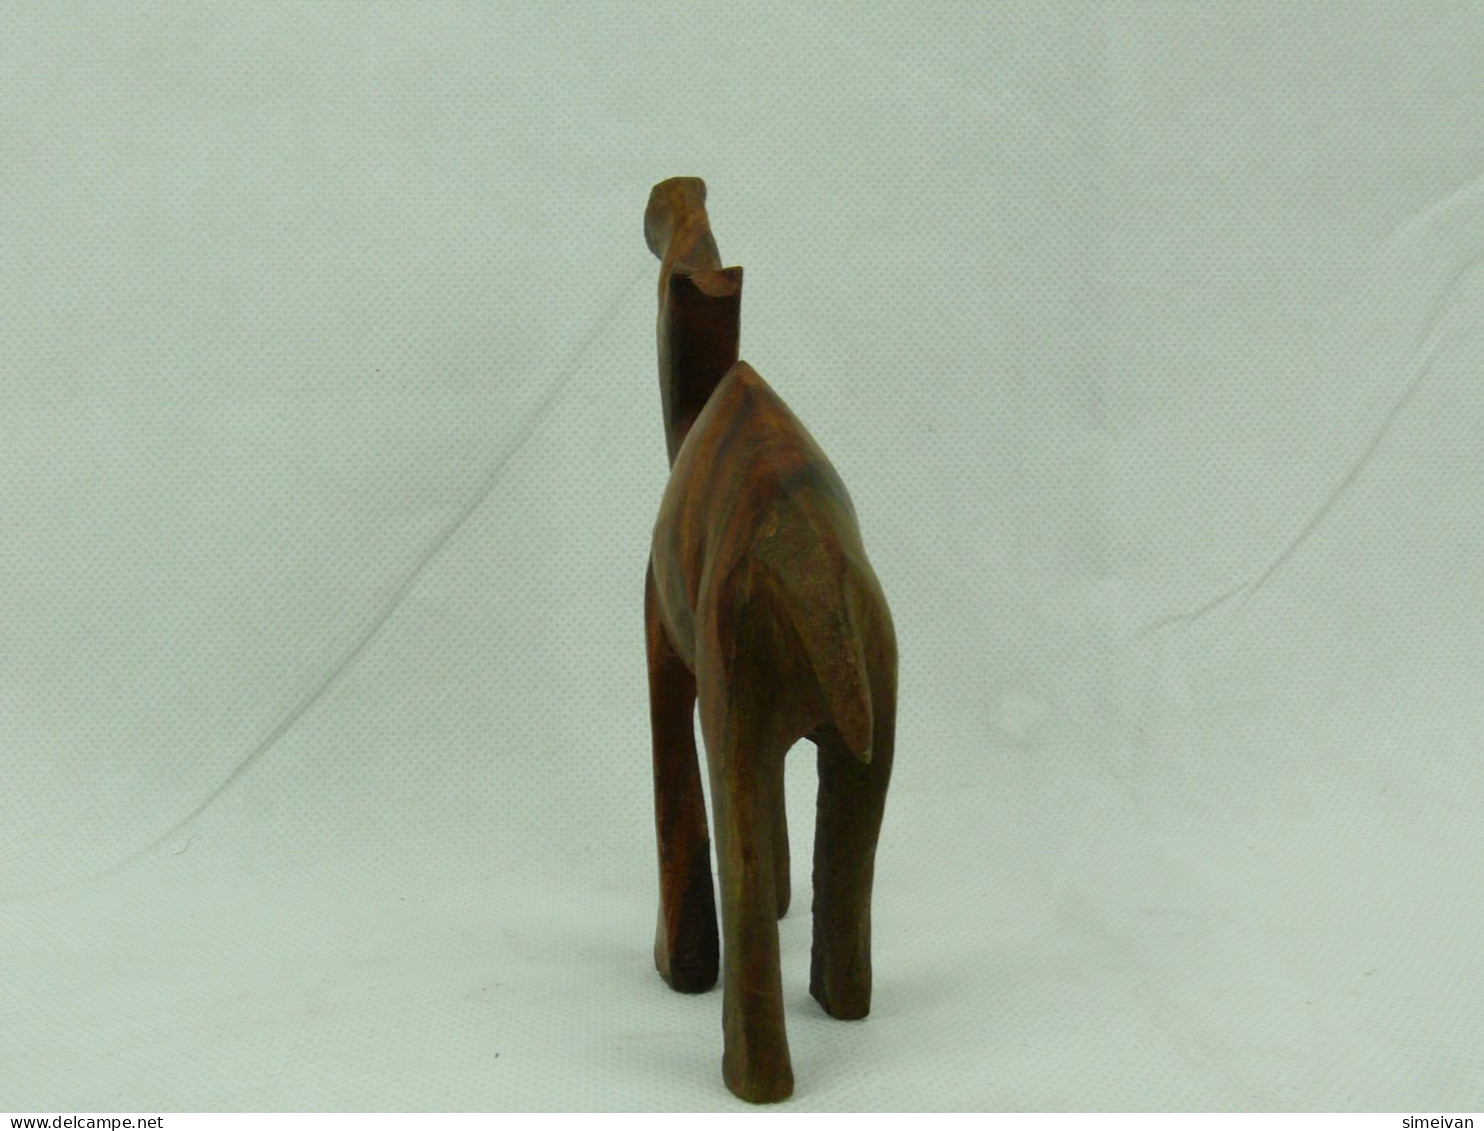 Vintage Hand-Carved Wooden CAMEL Figurine #2280 - Wood